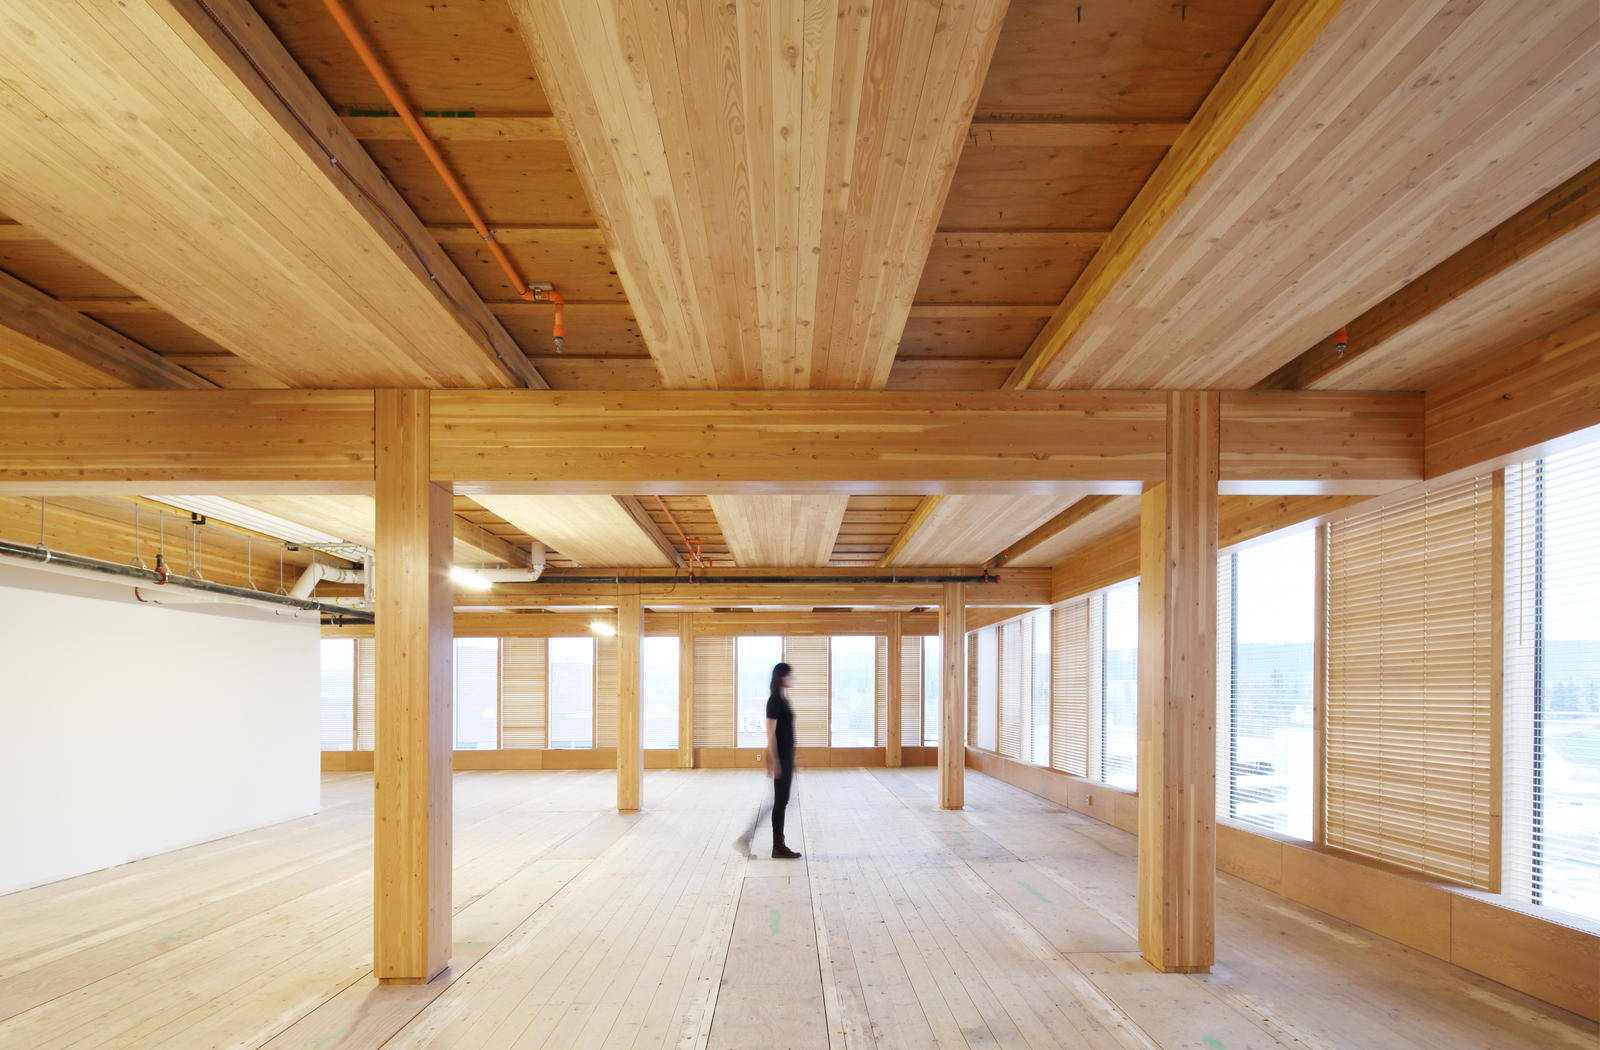 室内昼景，妇女行走在多层木结构中，显示木材的广泛使用，包括胶合木梁和柱支撑胶合板下层地板和下层硬木地板gydF4y2Ba